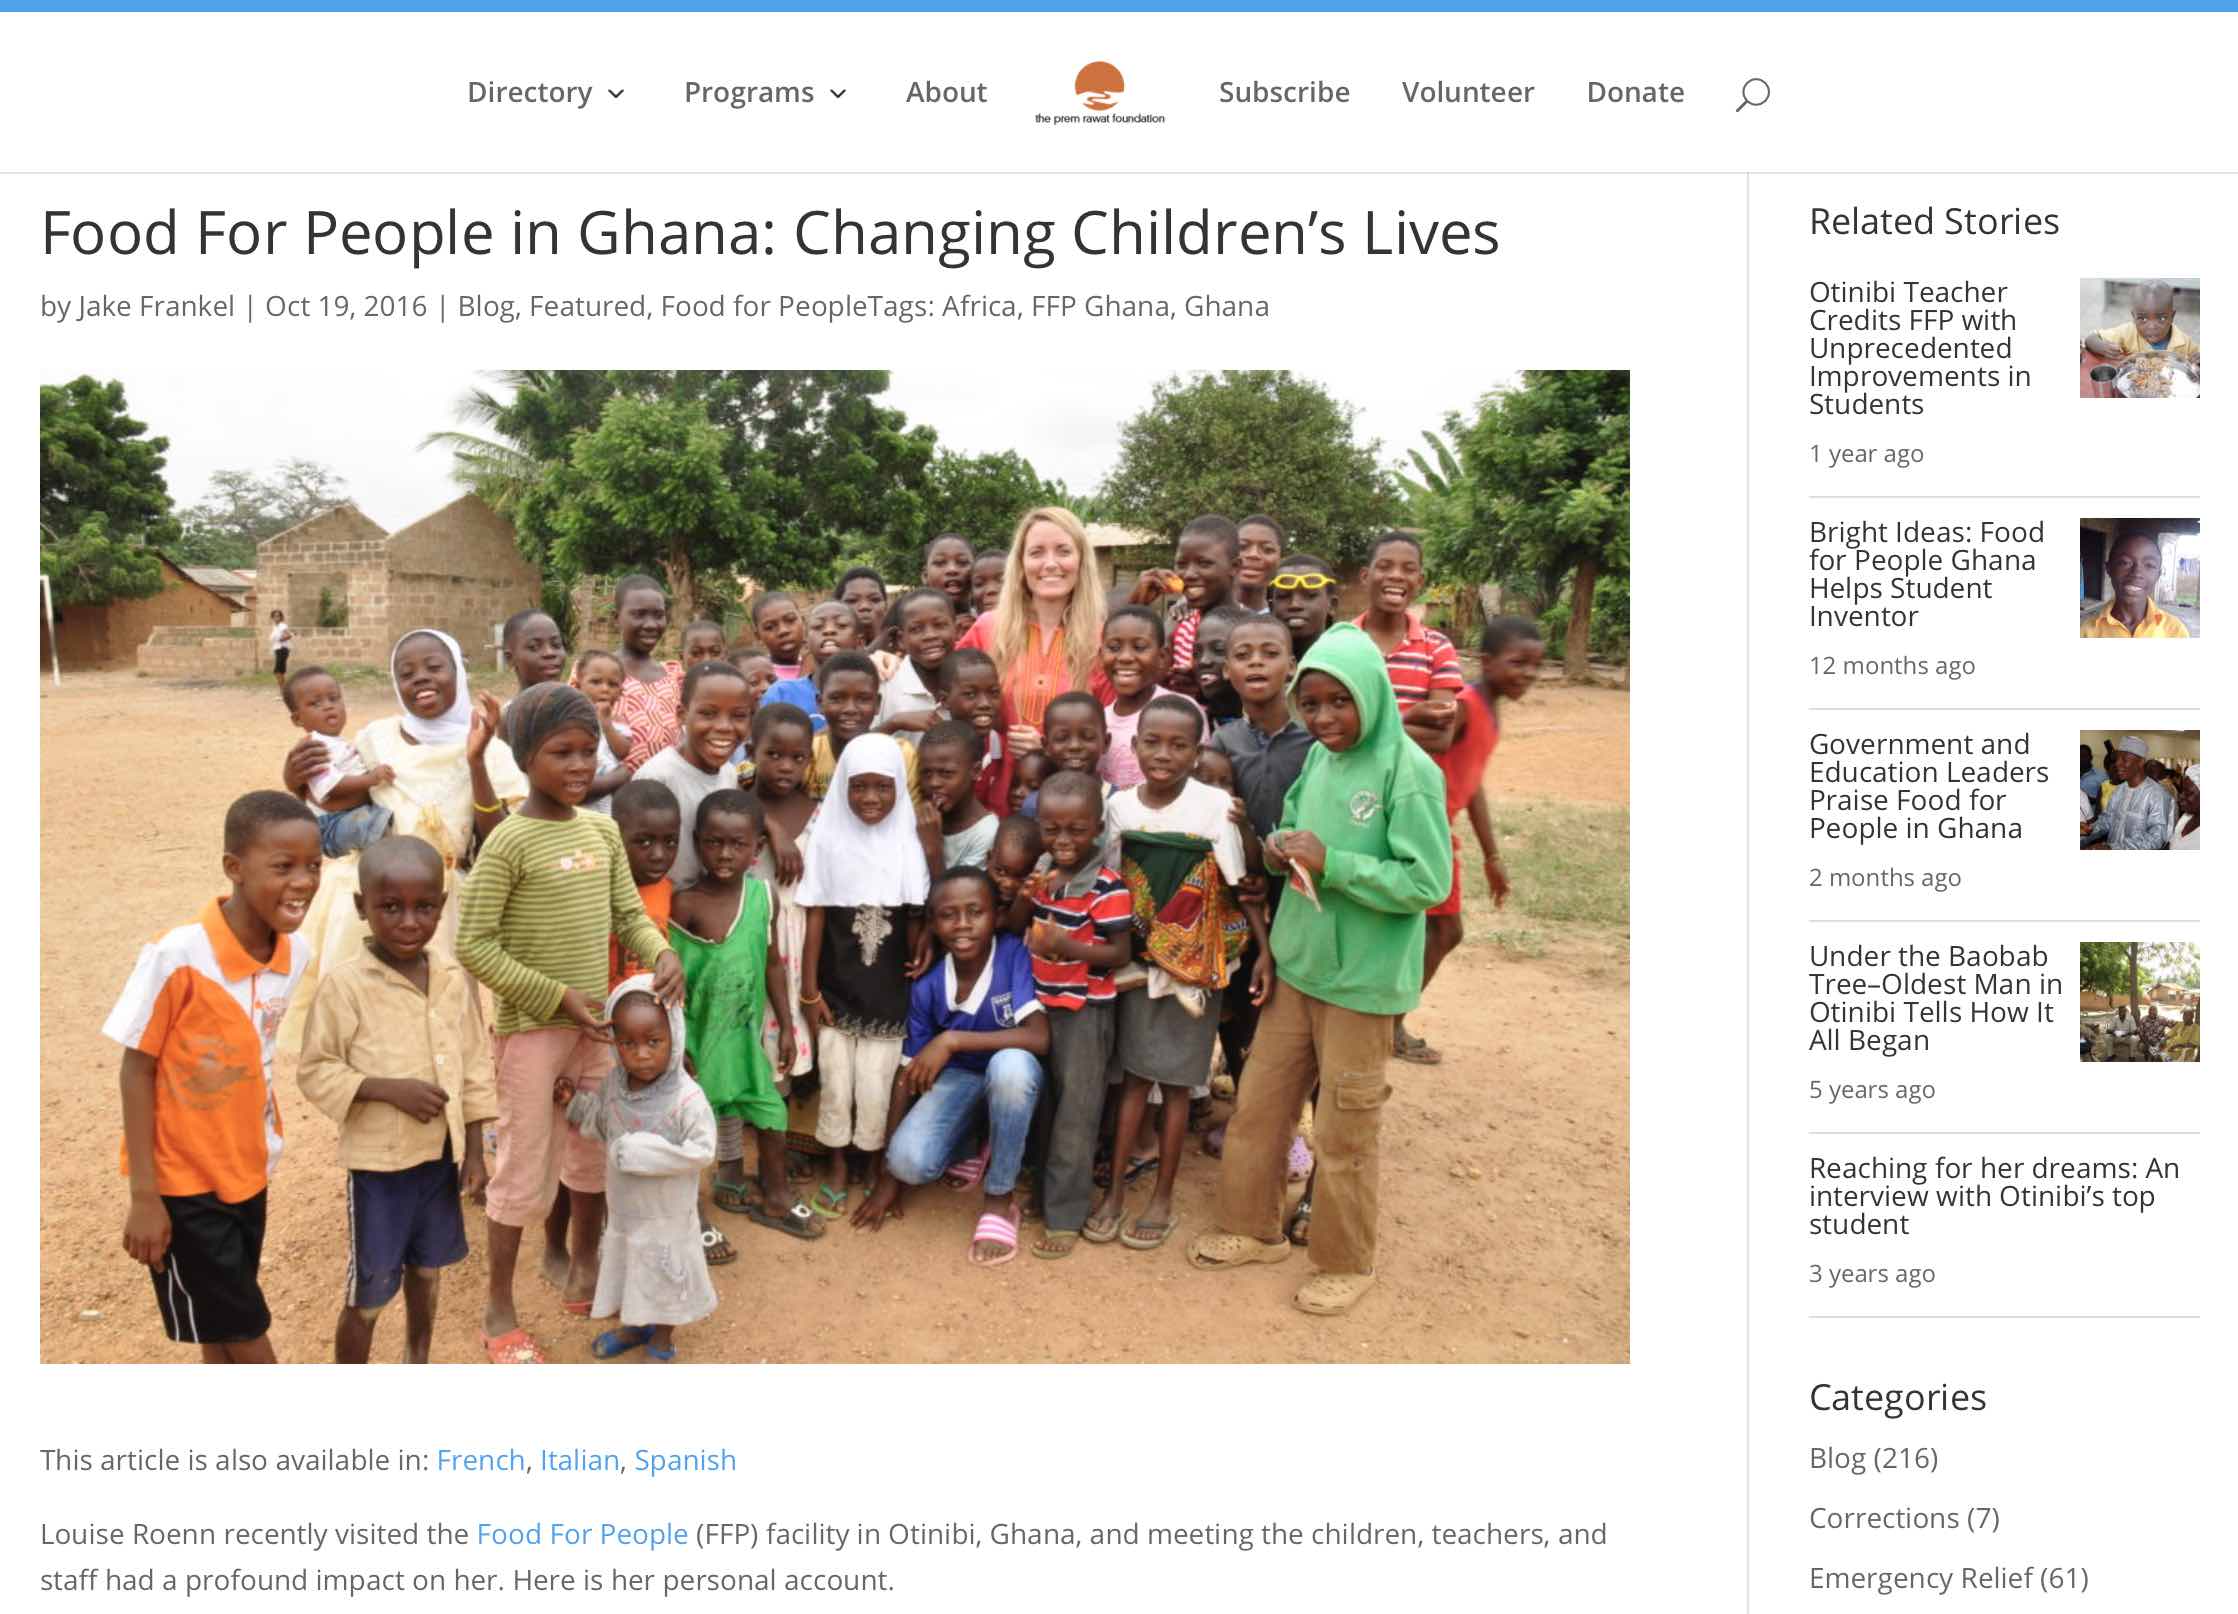 Louise Rønn besøger Food For People i Ghana